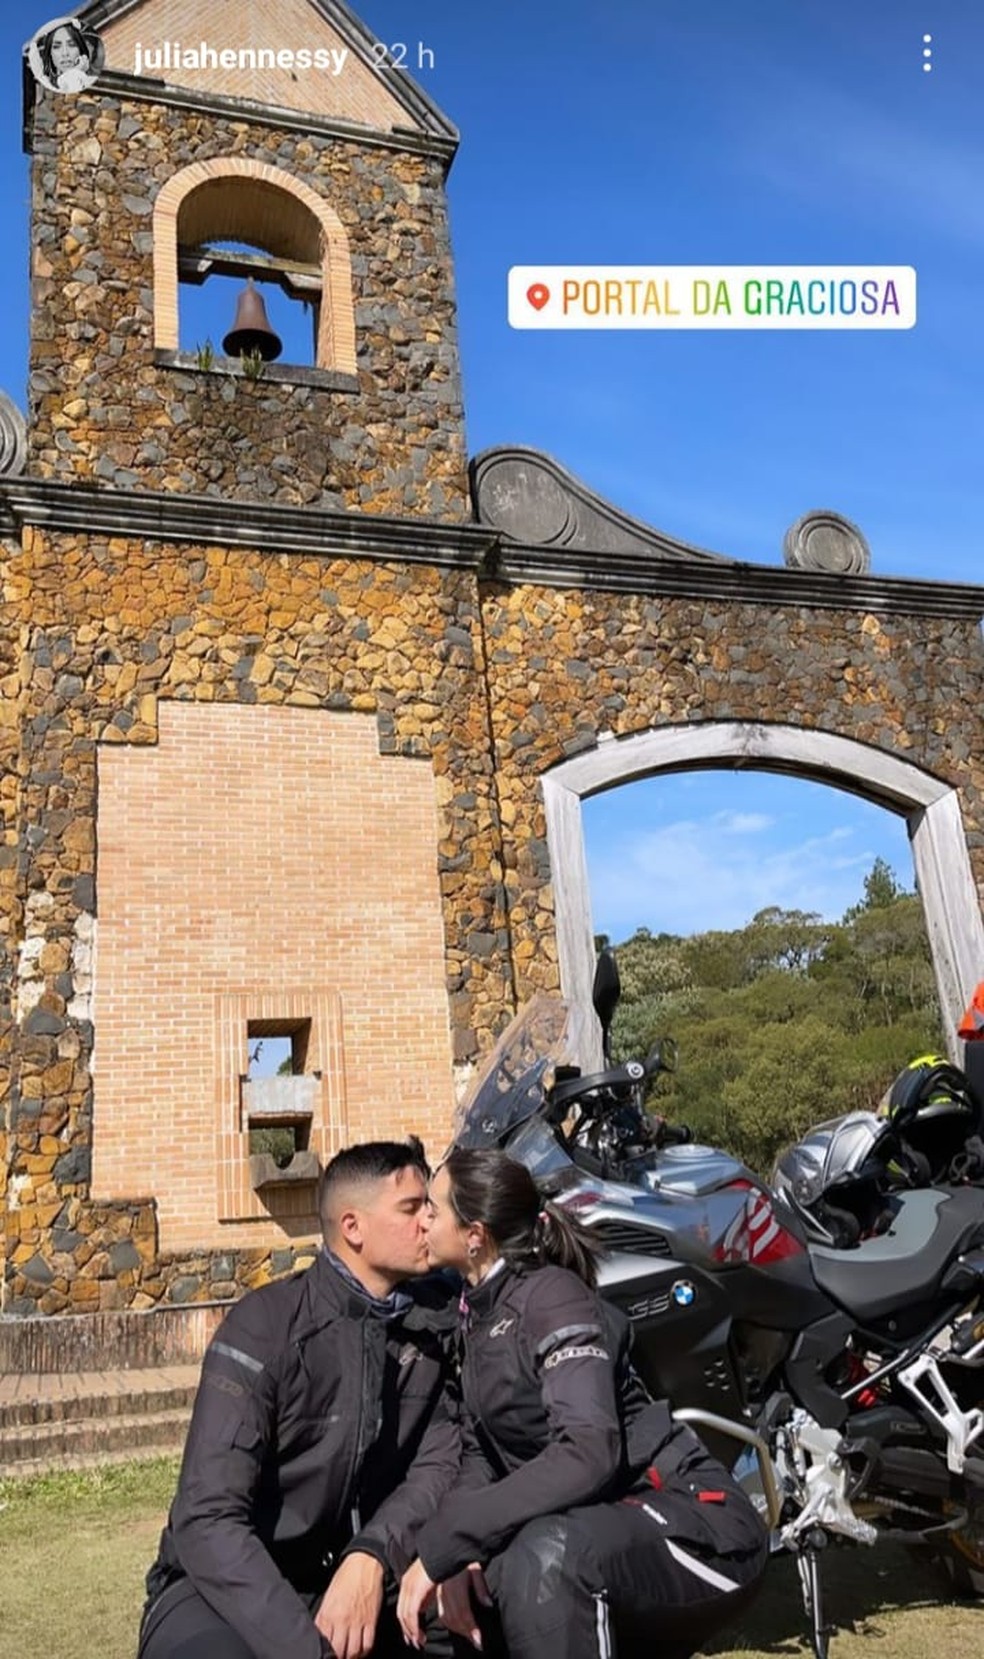 Momentos antes do acidente, ela publicou fotos viajando de moto com o companheiro e passando pela Serra da Graciosa. — Foto: Redes Sociais